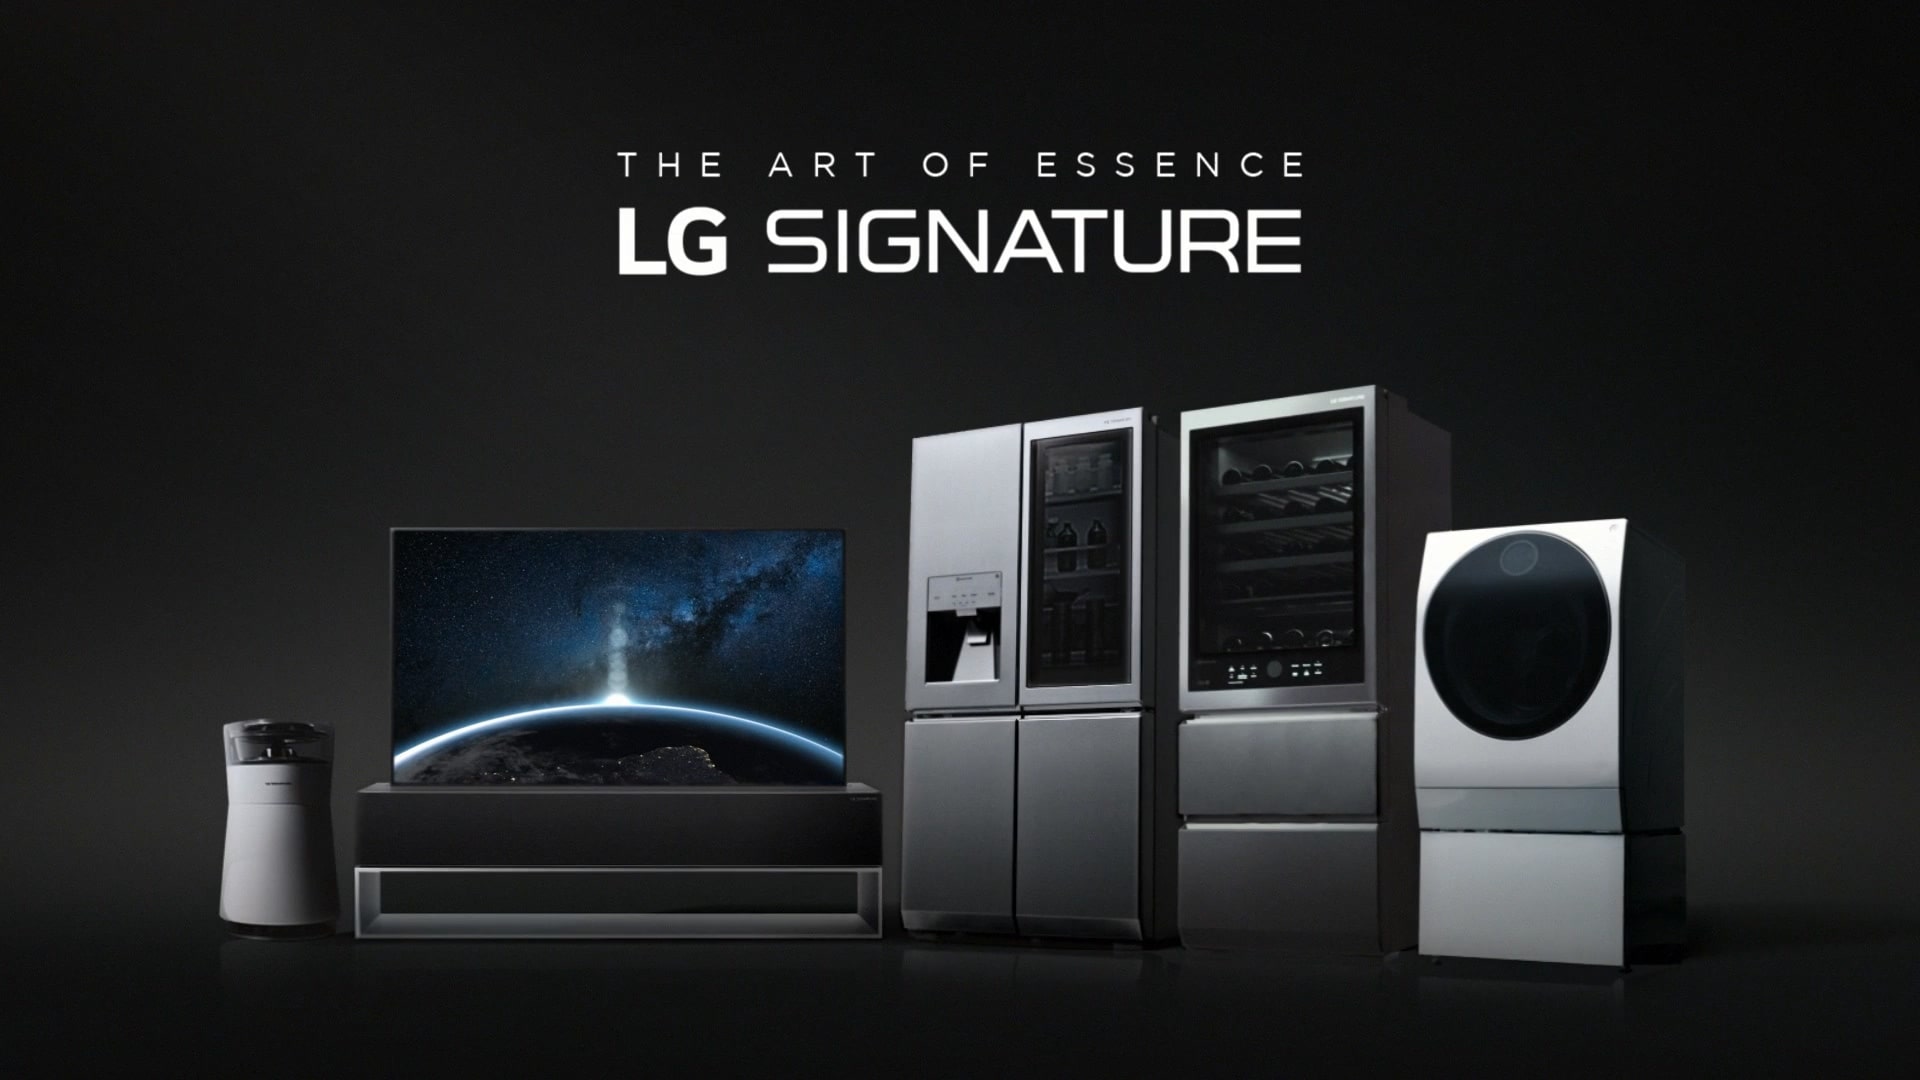 Breve video che illustra la grandezza, la maestria e l'innovazione di LG SIGNATURE. (riprodurre il video)